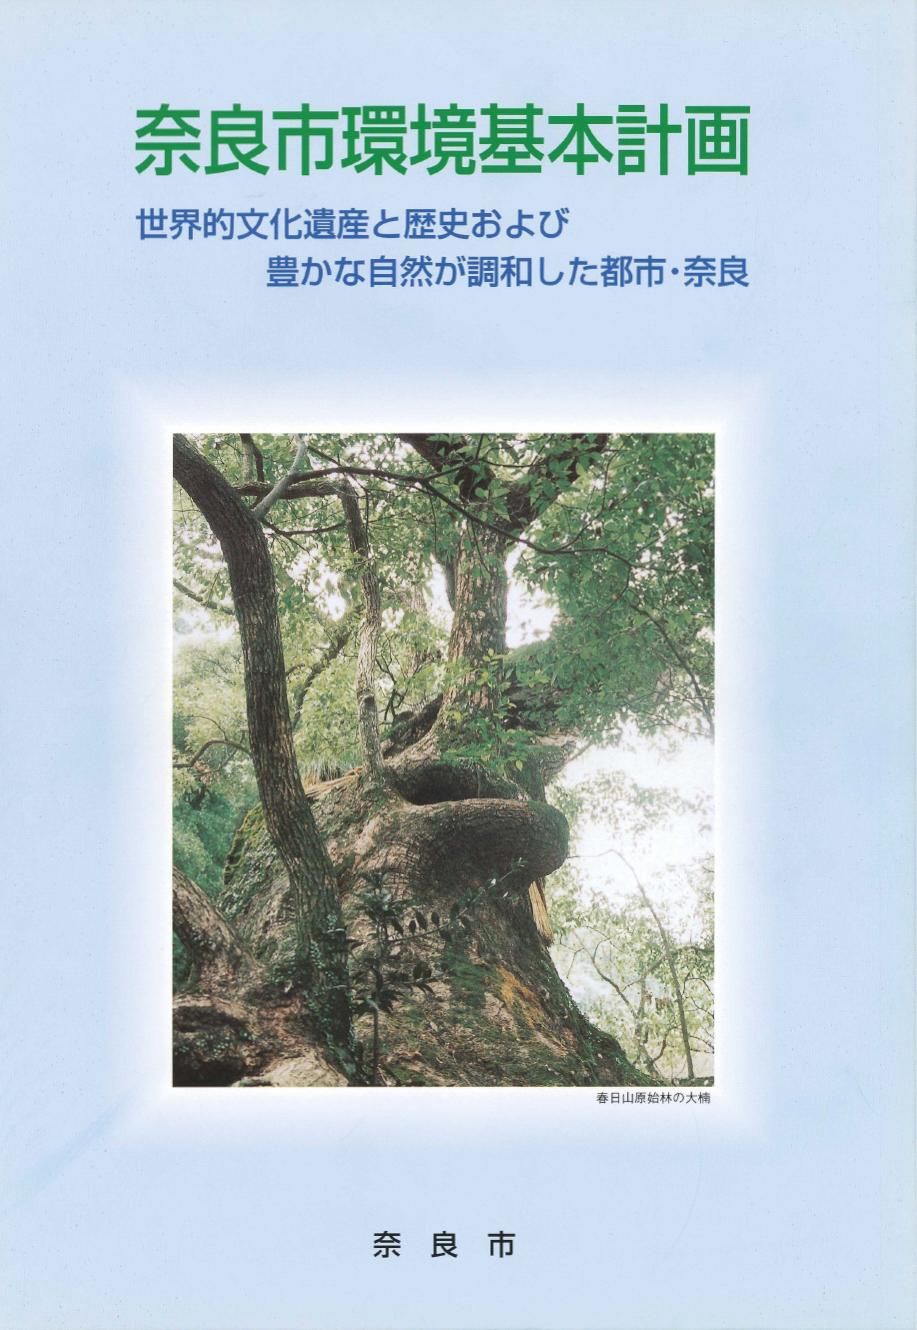 奈良市環境基本計画表紙